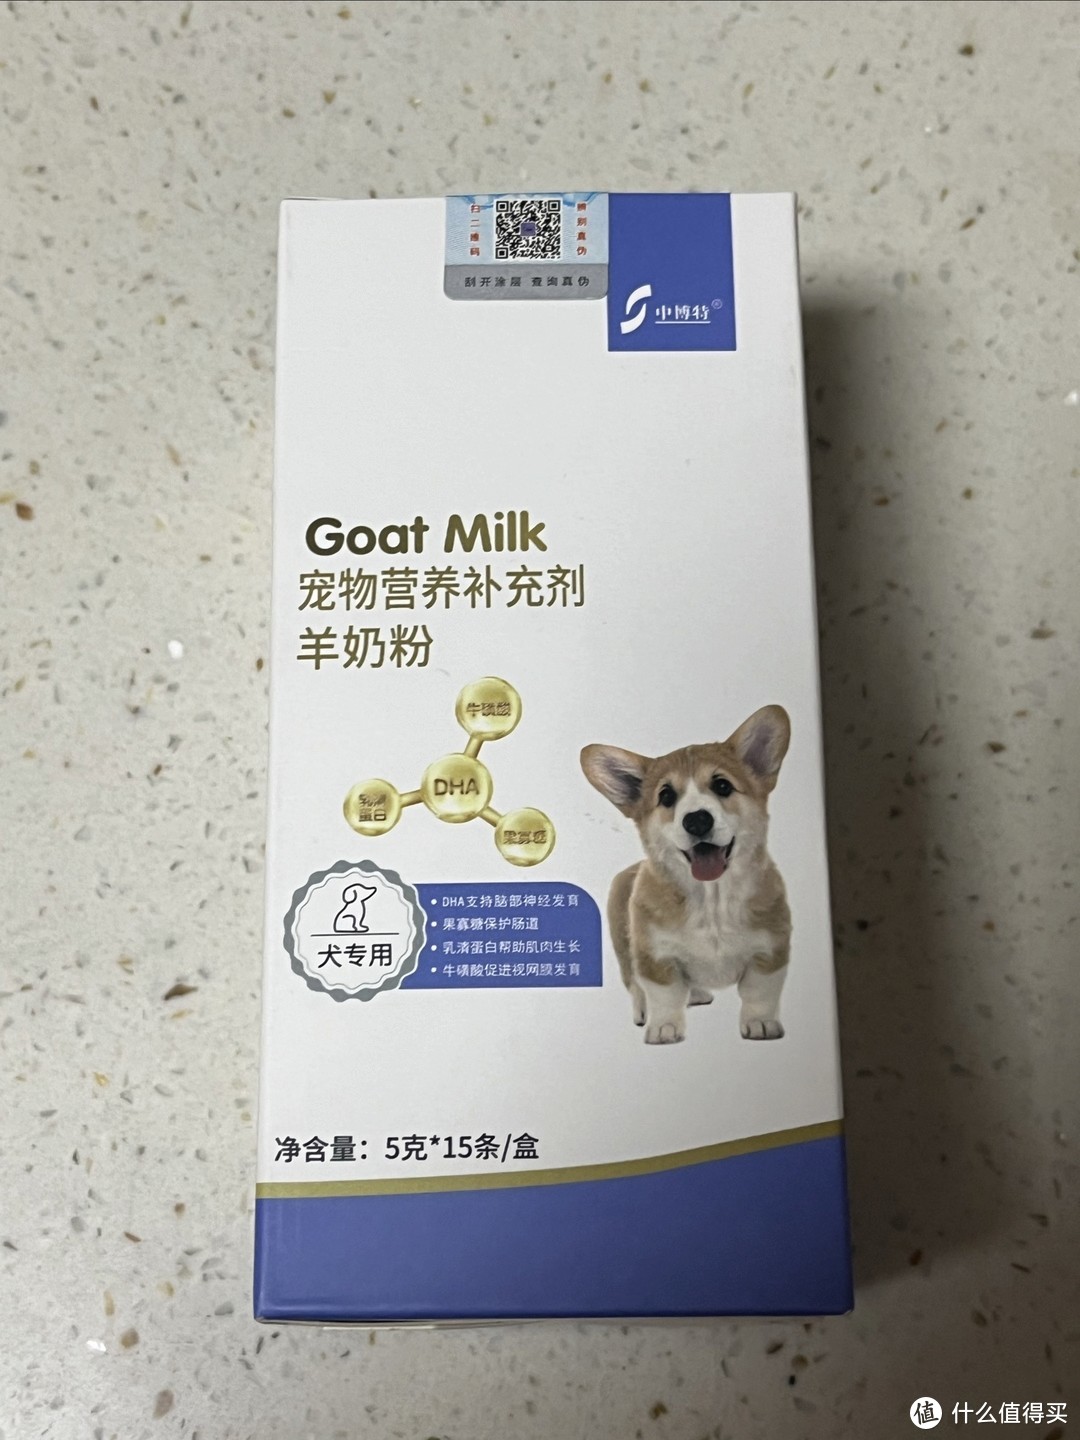 家有小奶猫千万不要给他喝牛奶，试试这款专用羊奶粉吧。